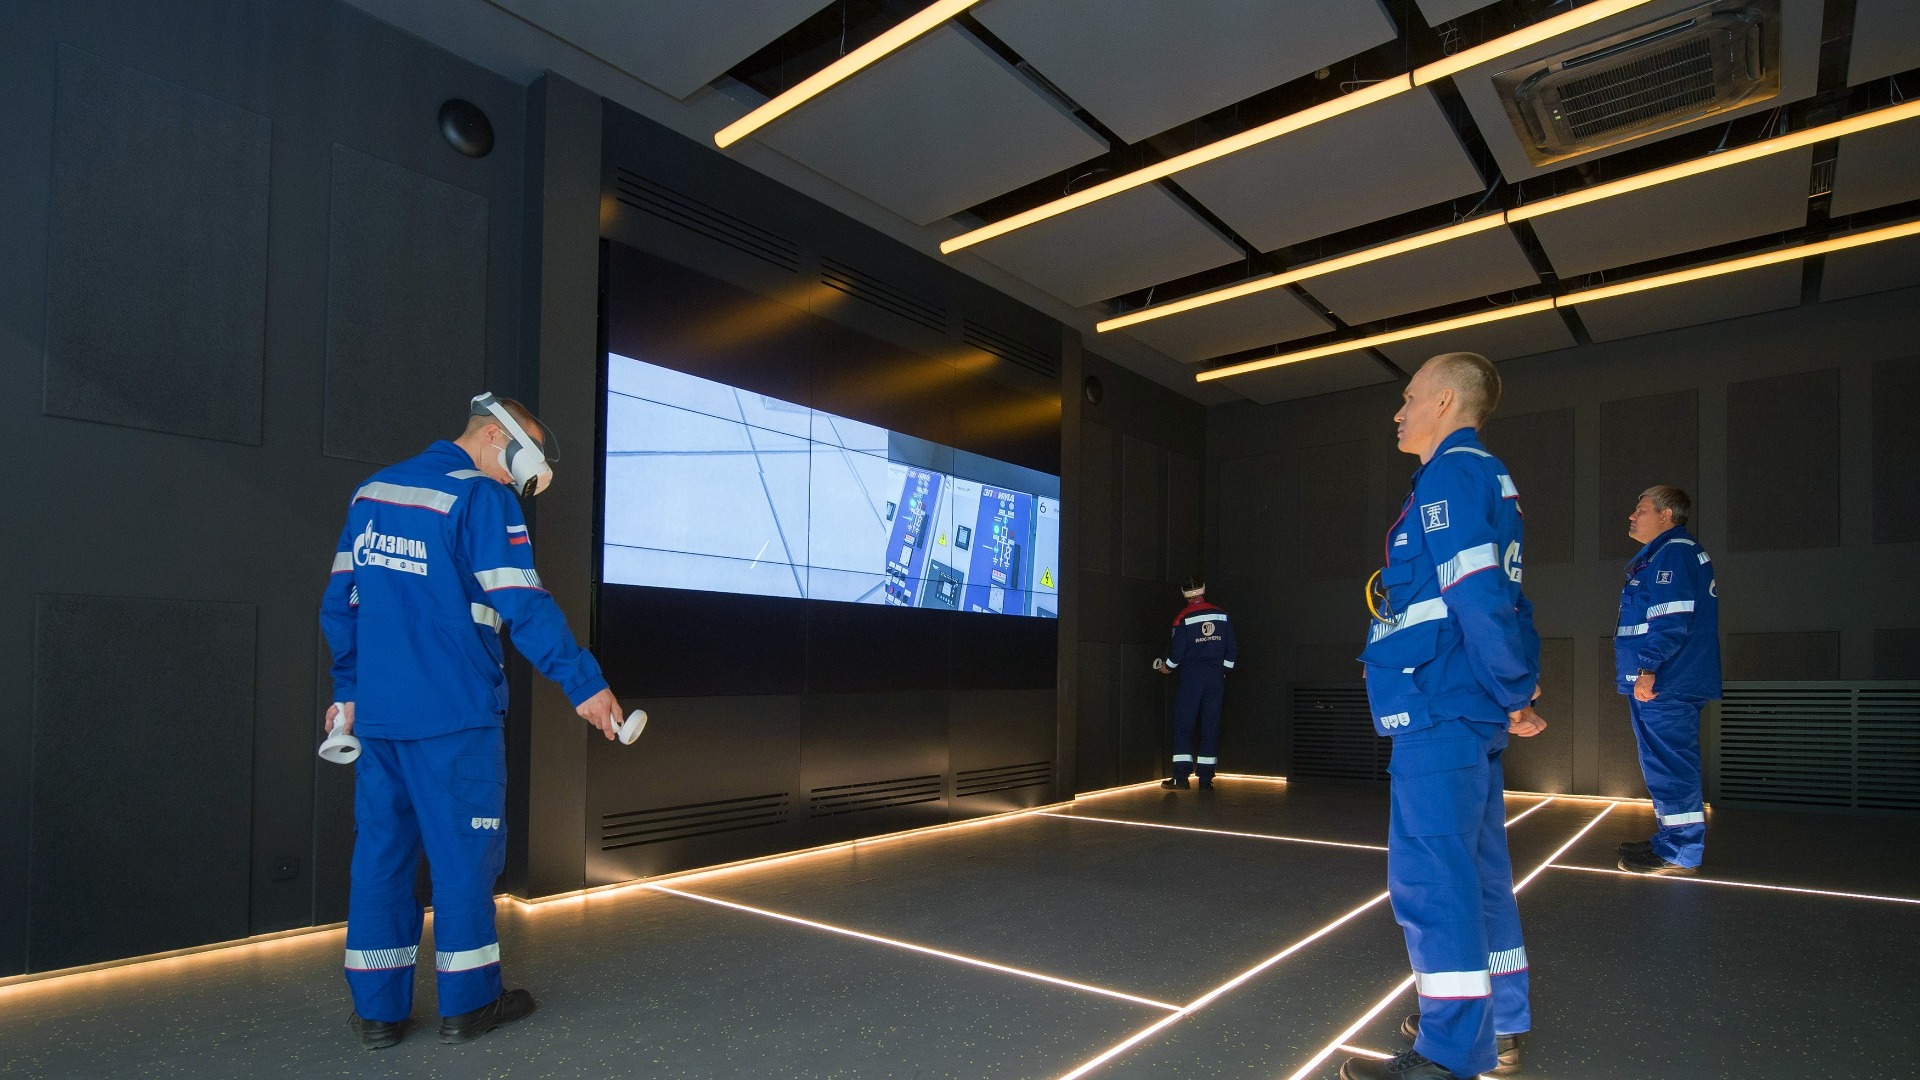 Омский НПЗ будет обучать сотрудников с помощью технологий виртуальной реальности